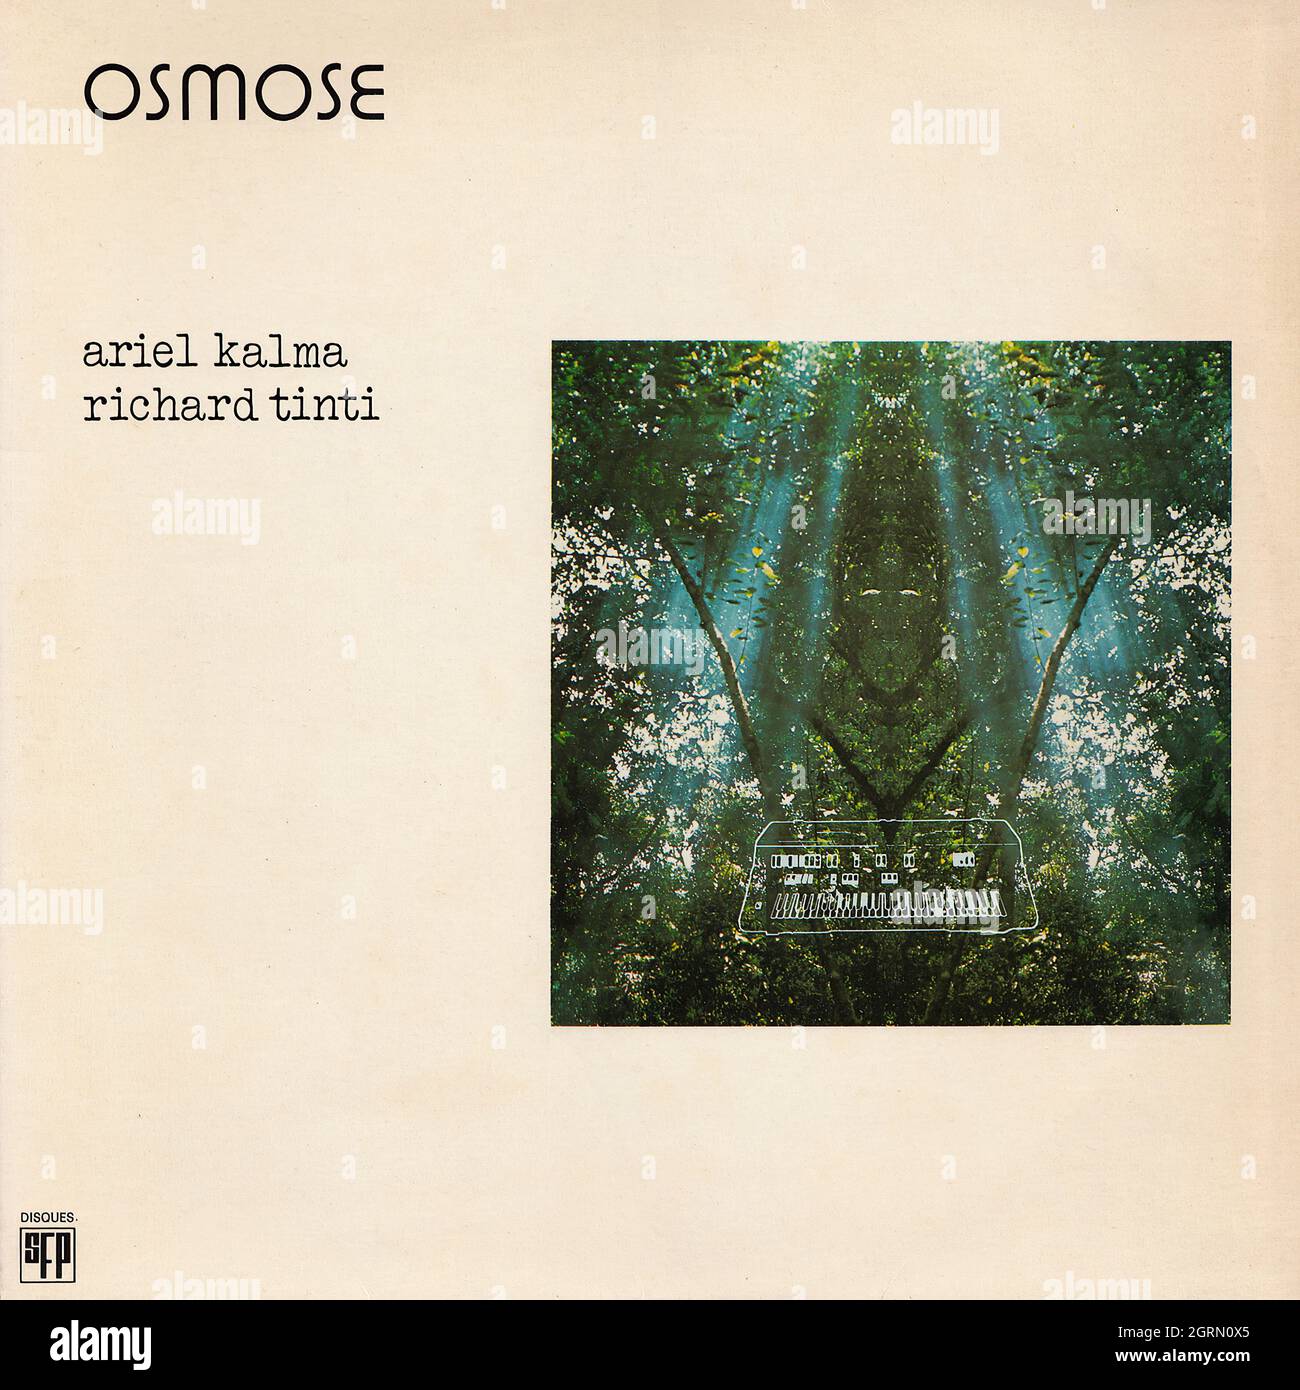 Ariel Kalma - Richard Tinti - Osmose - Vintage Vinyl Record Cover Stock Photo